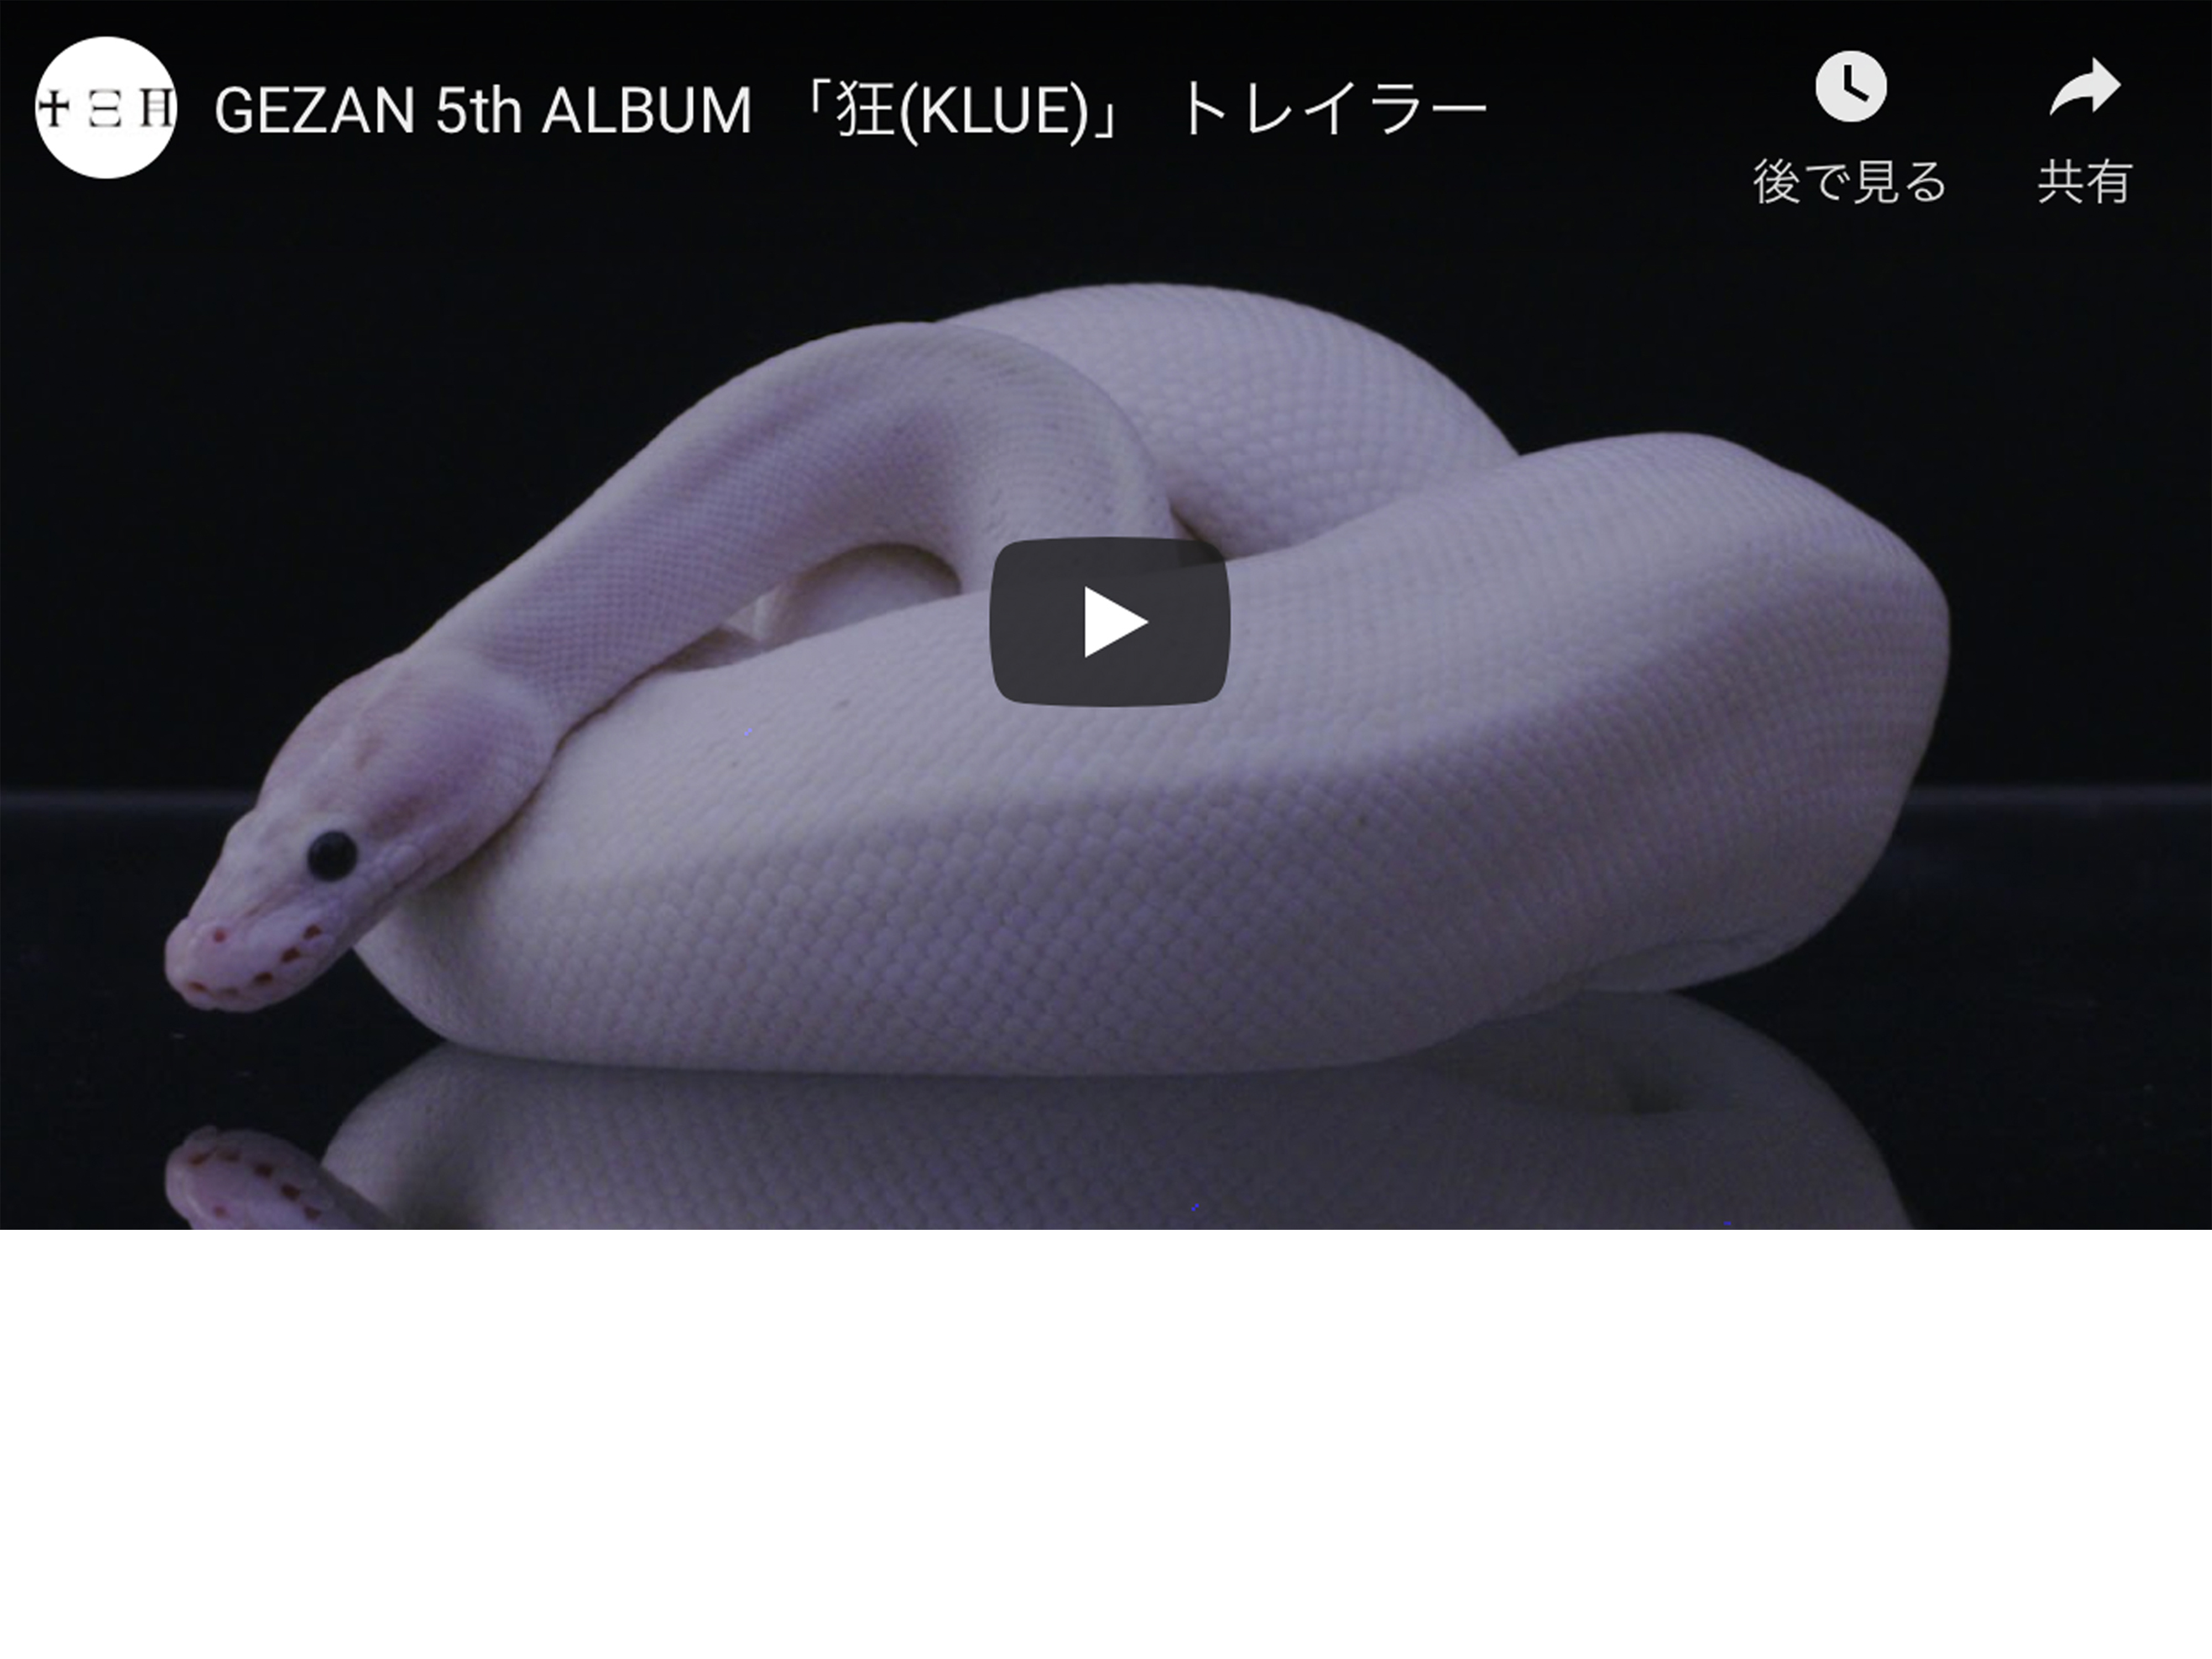 GEZAN 5th ALBUM 「狂(KLUE)」トレイラーが公開されました